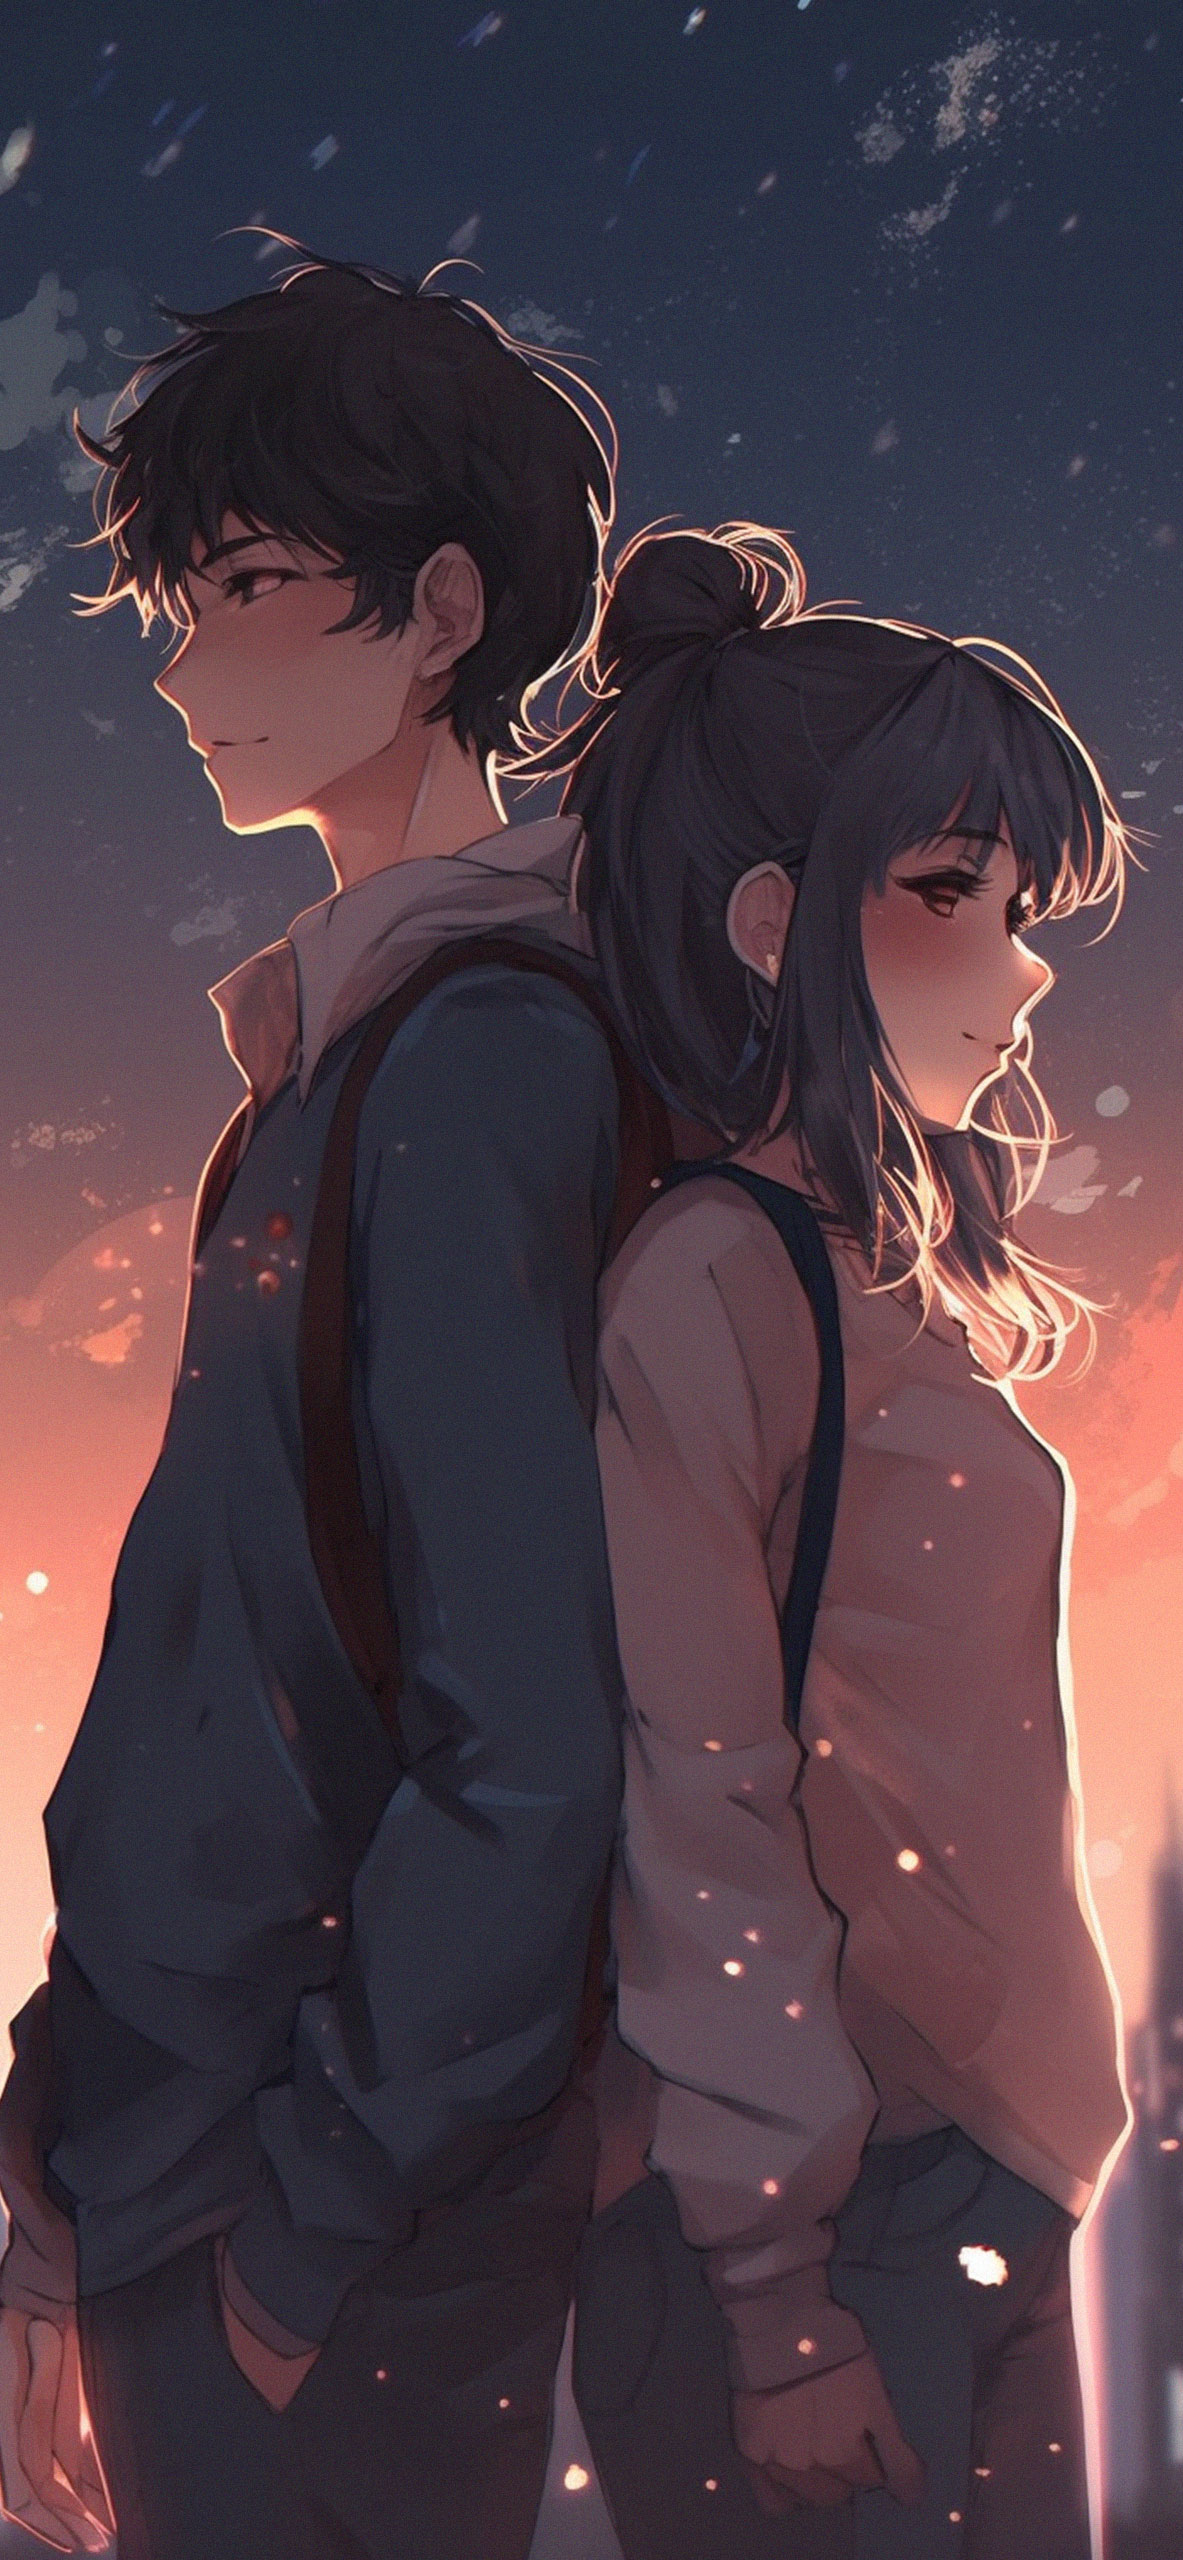 Boy & Girl in Love Anime Wallpaper Anime Boy & Girl Wallpaper